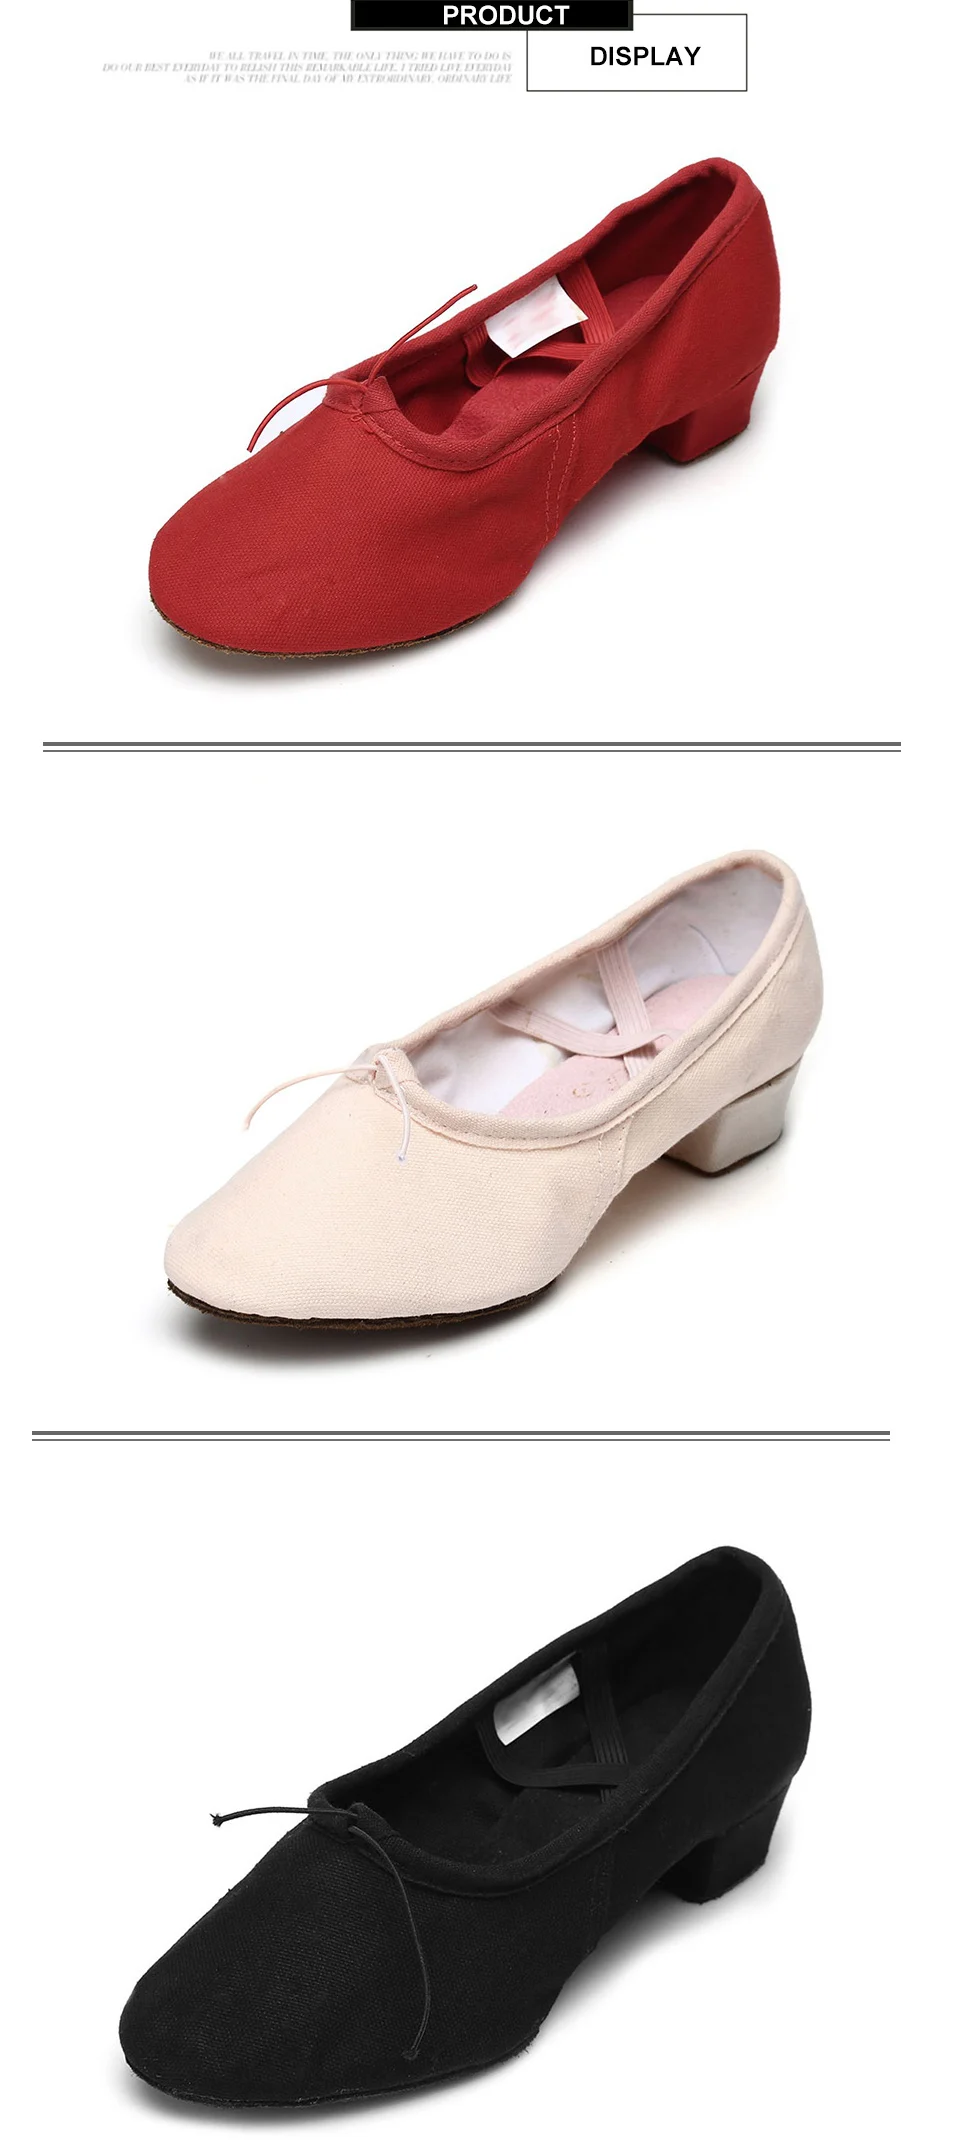 Балетки Женская танцевальная обувь парусиновая танцевальная обувь с мягкой подошвой на низком квадратном каблуке Женская обувь для тренировок для девочек, розовый, черный, красный цвета